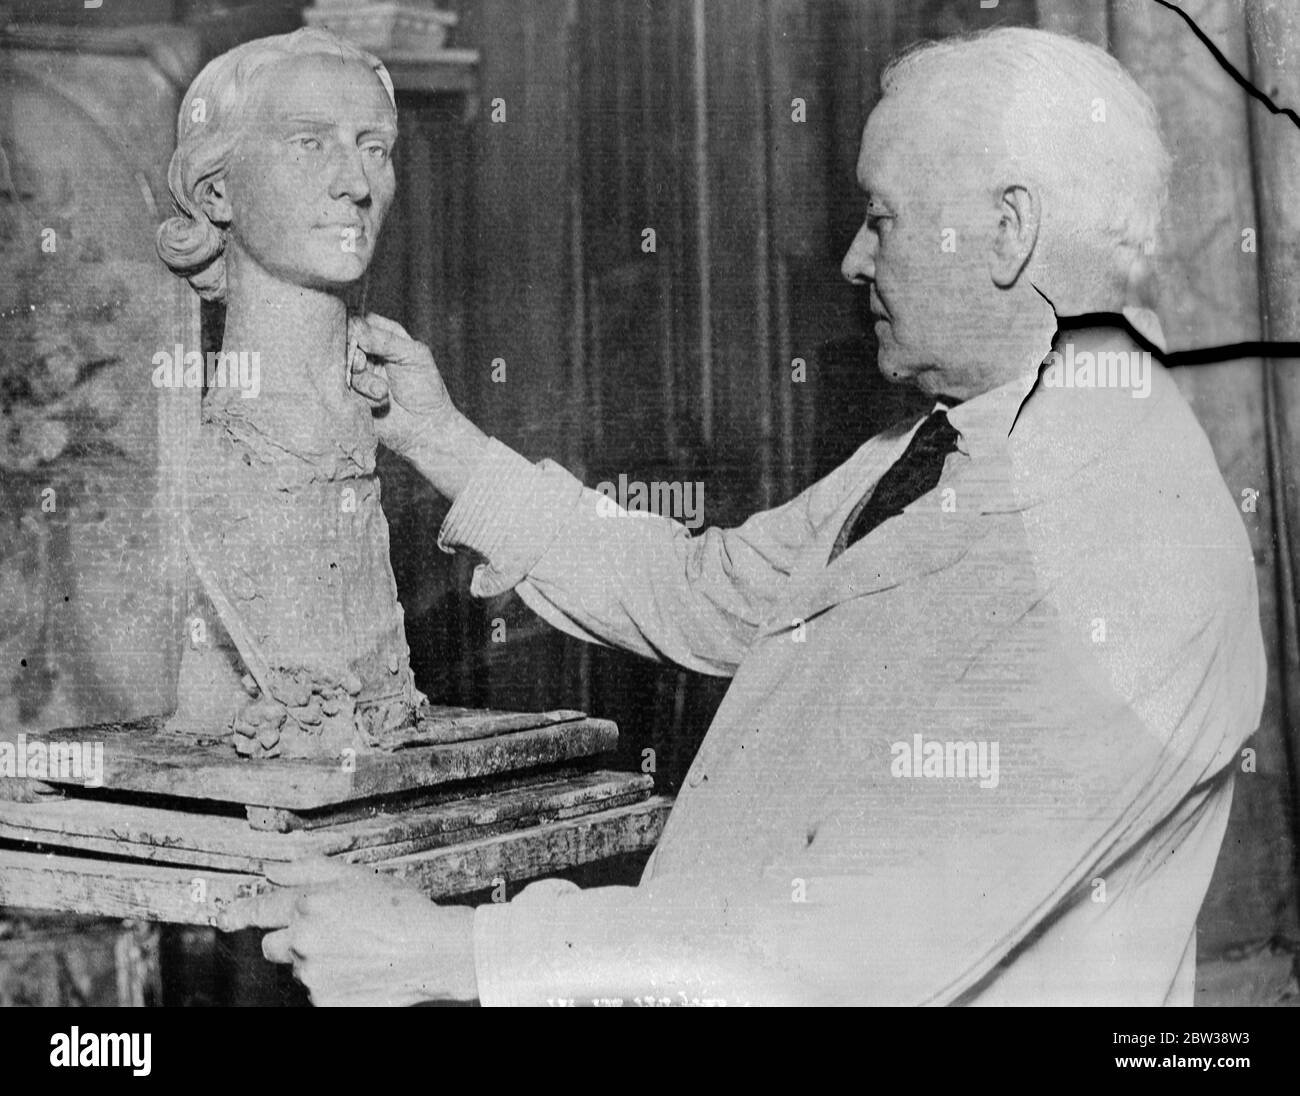 Sculpteur de Londres au travail sur le buste de la fille de chasse . M. W B Fagan , le sculpteur londonien , travaille sur un buste de Mlle Pauline Ainsworth de Cullompton , près d'Exeter . Mlle Ainsworth est une figure bien connue dans les champs de chasse du Devon . Photos ; M. W B Fagan au travail sur le buste dans son studio de Londres . 10 janvier 1934 30, 30, 30, 30, 30, 30, 30, 30, 30, 30 Banque D'Images